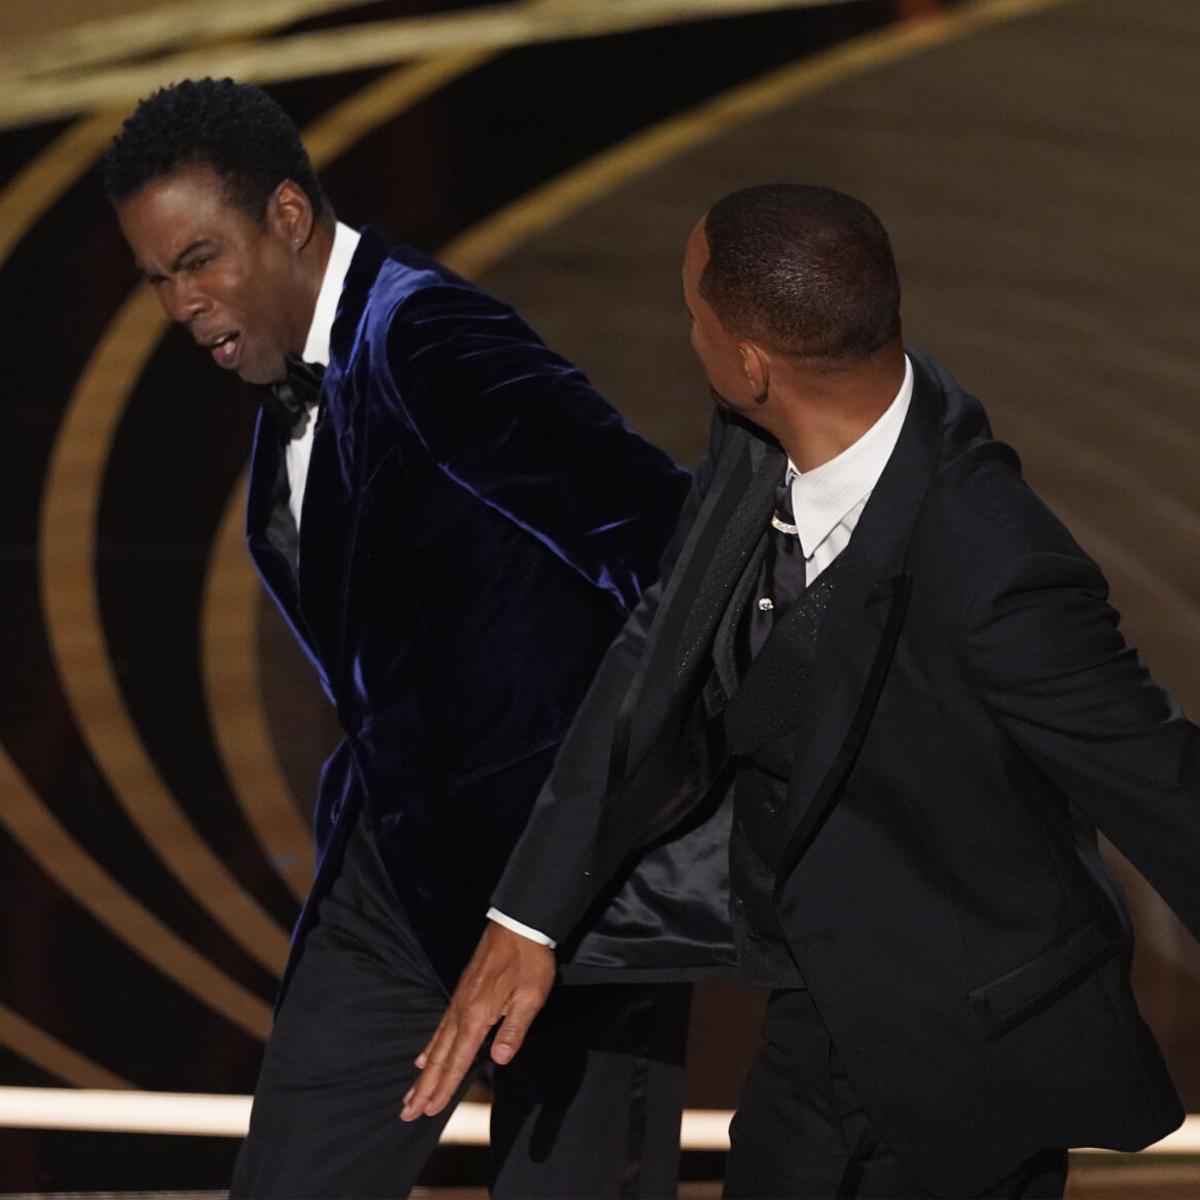 Premios Oscar: califican de "inadecuada" la respuesta ante bofetada de Will  Smith a Chris Rock | Otros | elvocero.com